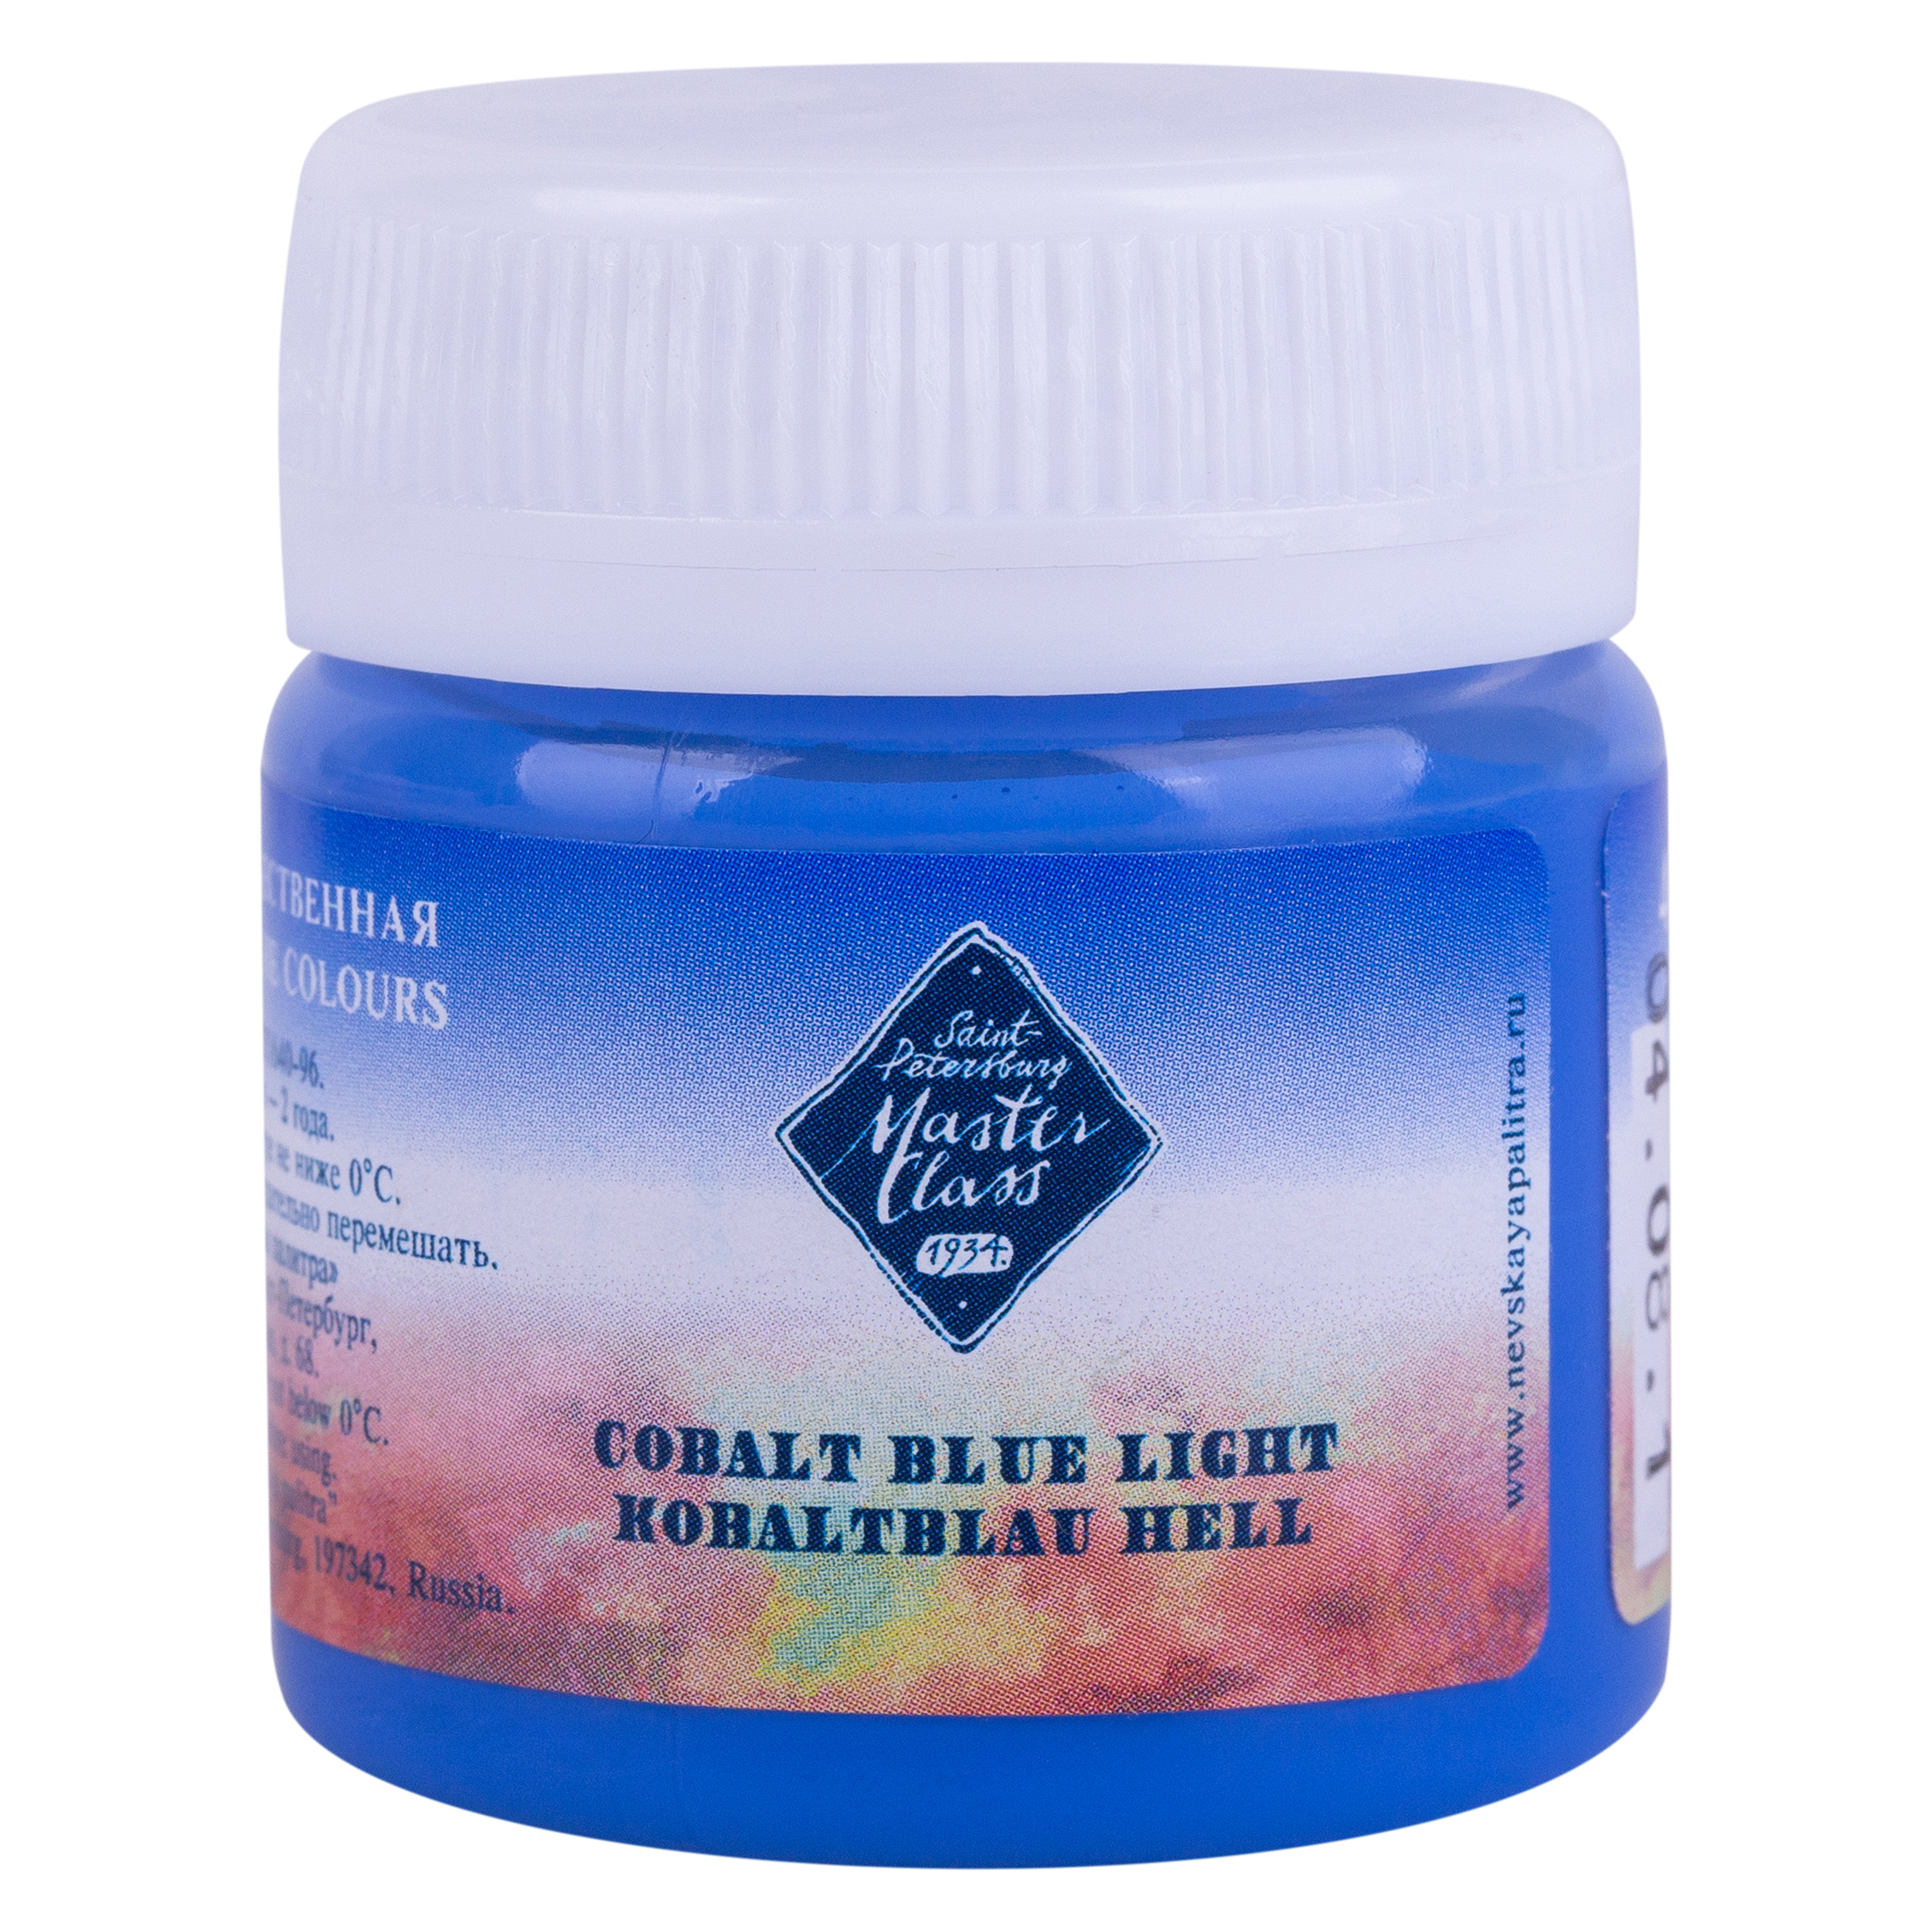 Cobalt blue light "Master Class" in the jar. № 504